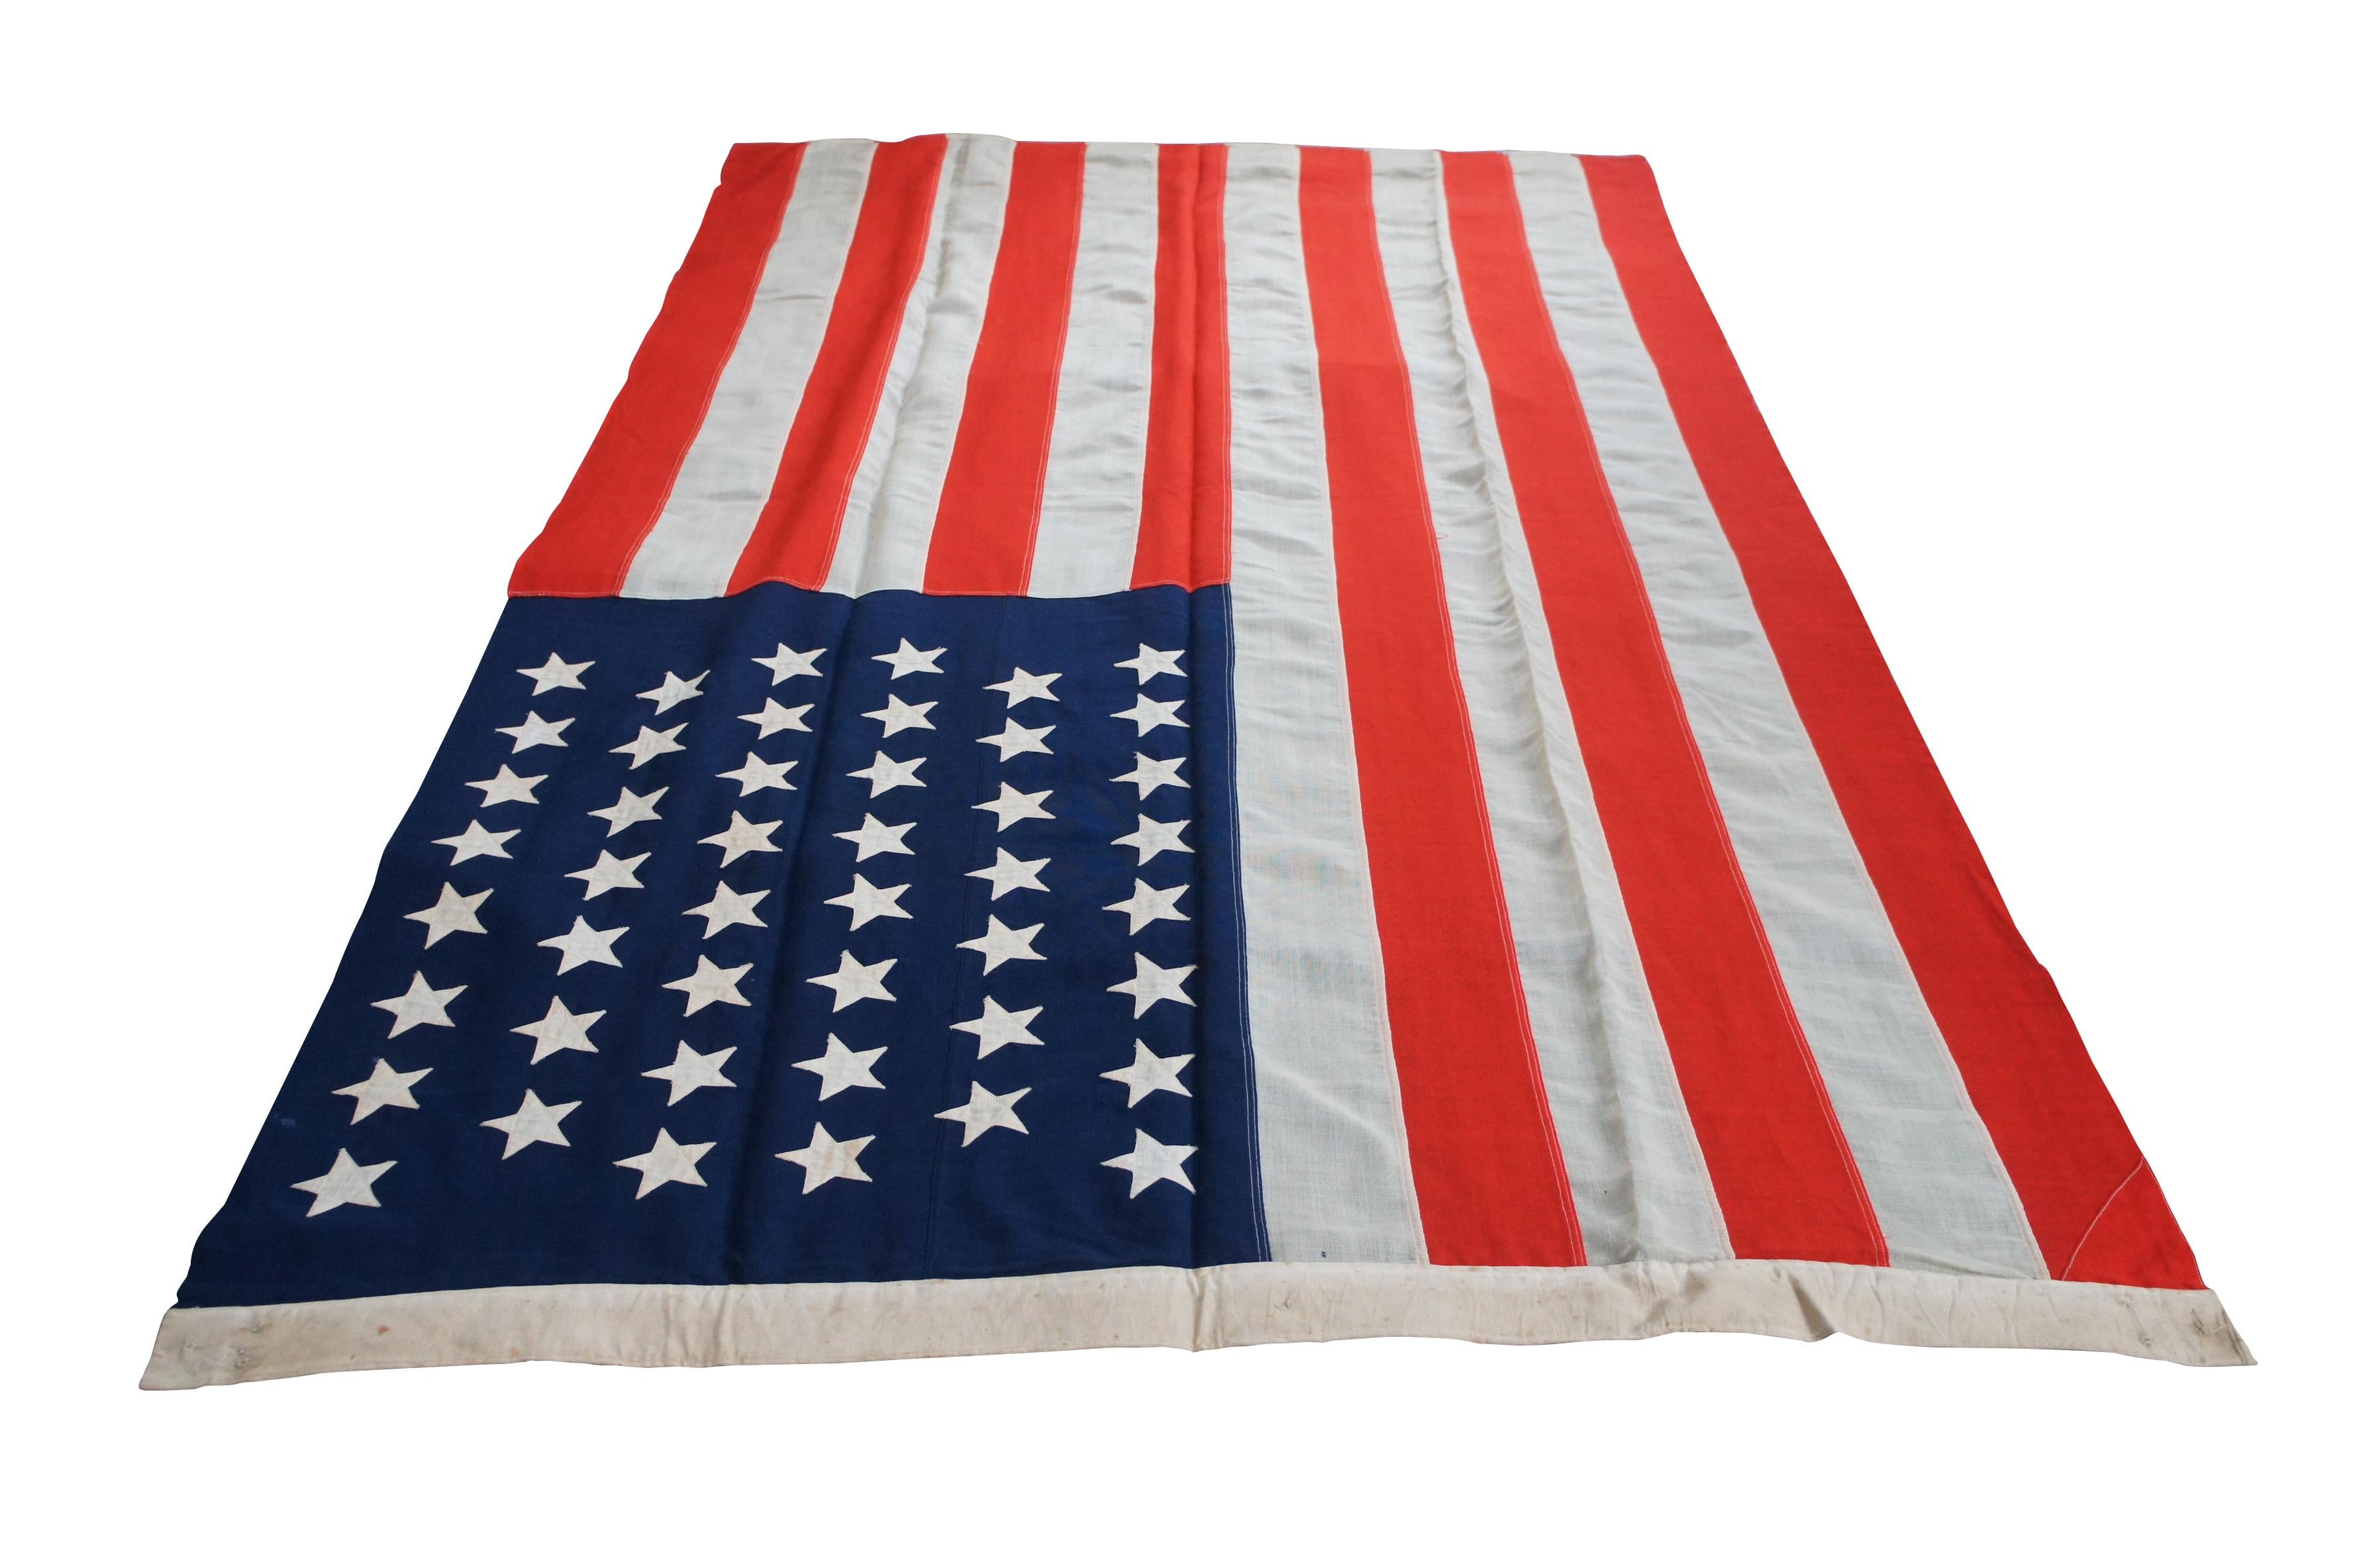 Antike amerikanische Flagge mit sechsundvierzig Sternen aus Wolle der Firma Horstmann, ca. 1908-1912.

Die Firma Horstmann wurde von William H. Horstmann (1785-1850) gegründet, der aus Deutschland nach Philadelphia eingewandert war. Horstmann kaufte